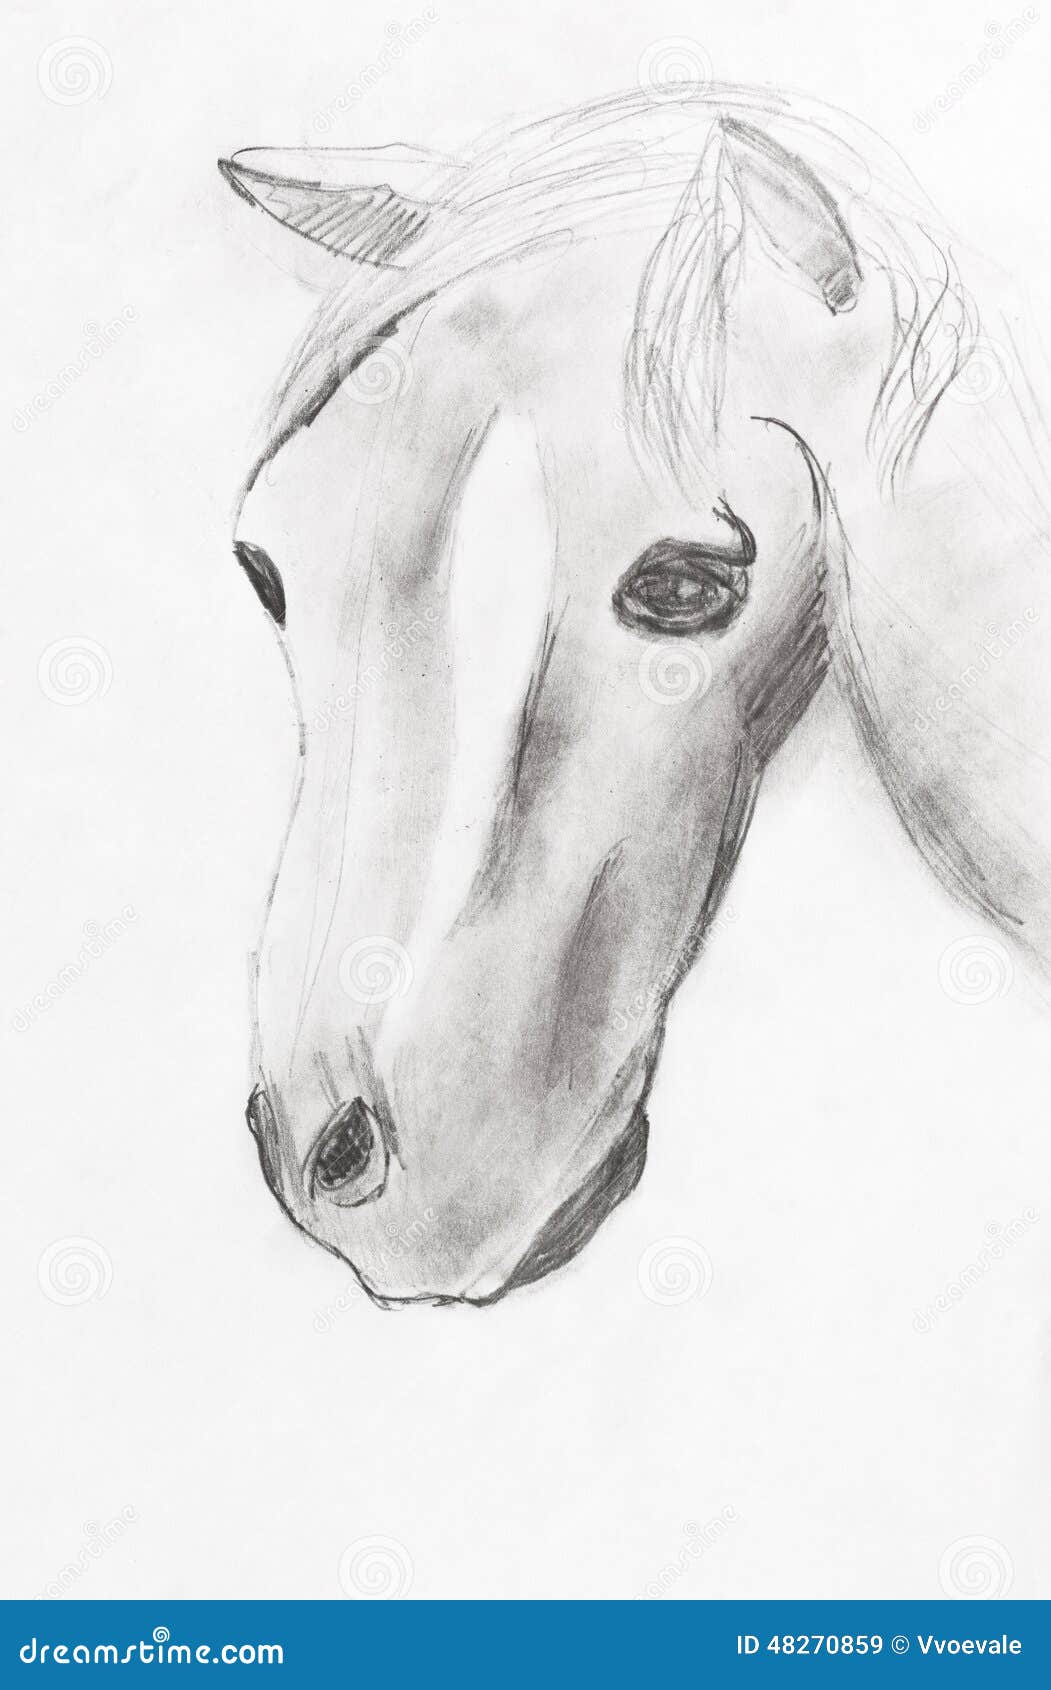 Original Pencil Sketch of Horse Pencil Sketch Horse Sketch - Etsy